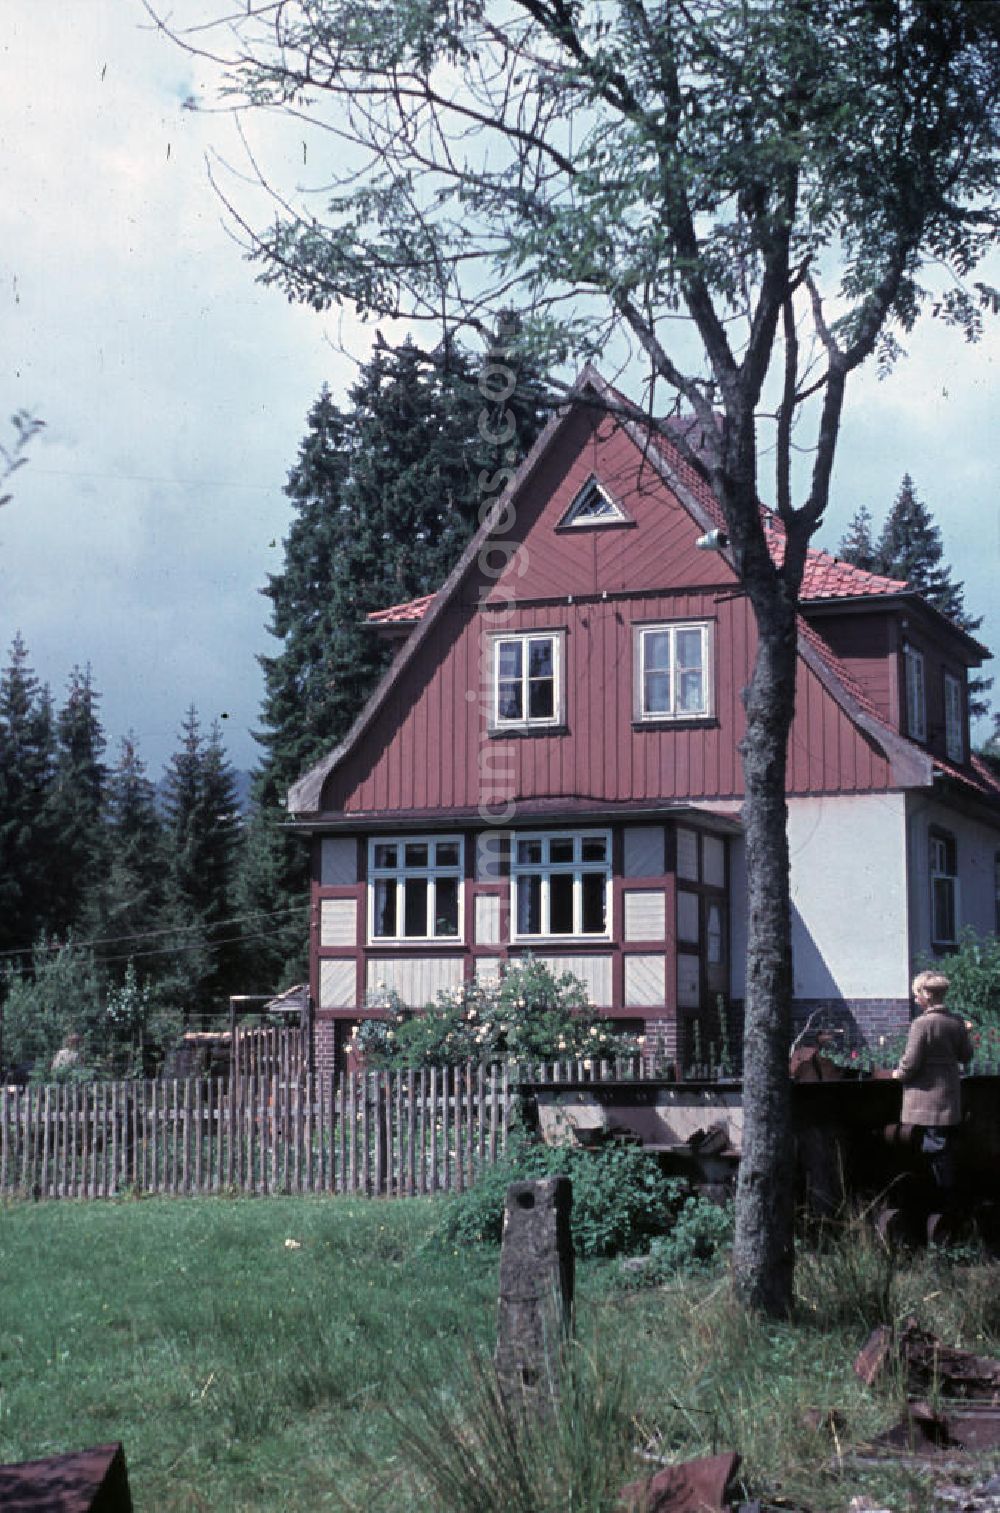 GDR picture archive: Schierke - Fachwerkhaus in der Brockenstraße in Schierke im Harz. Half-timber house in the street Brockenstraße in Schierke in the Harz Mountains.